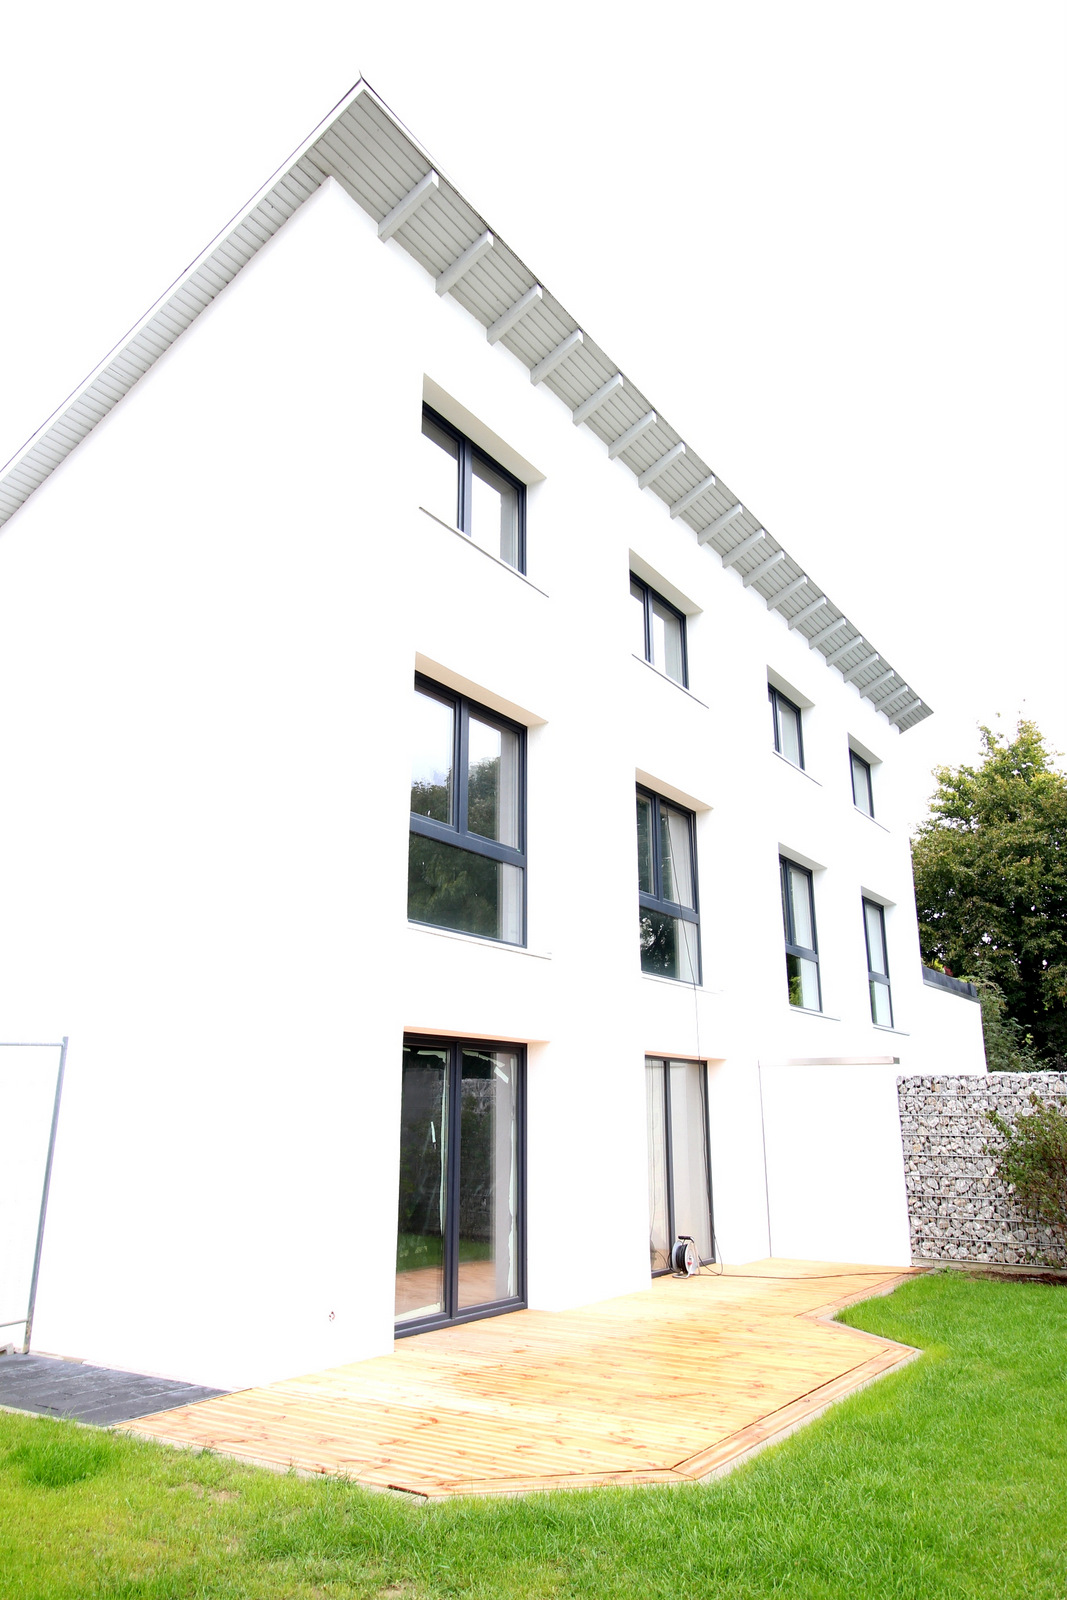 VERKAUFT: Moderne Neubau-Doppelhaushälfte in Göxe als fertiggestellter Rohbau mit angelegtem Grundstück